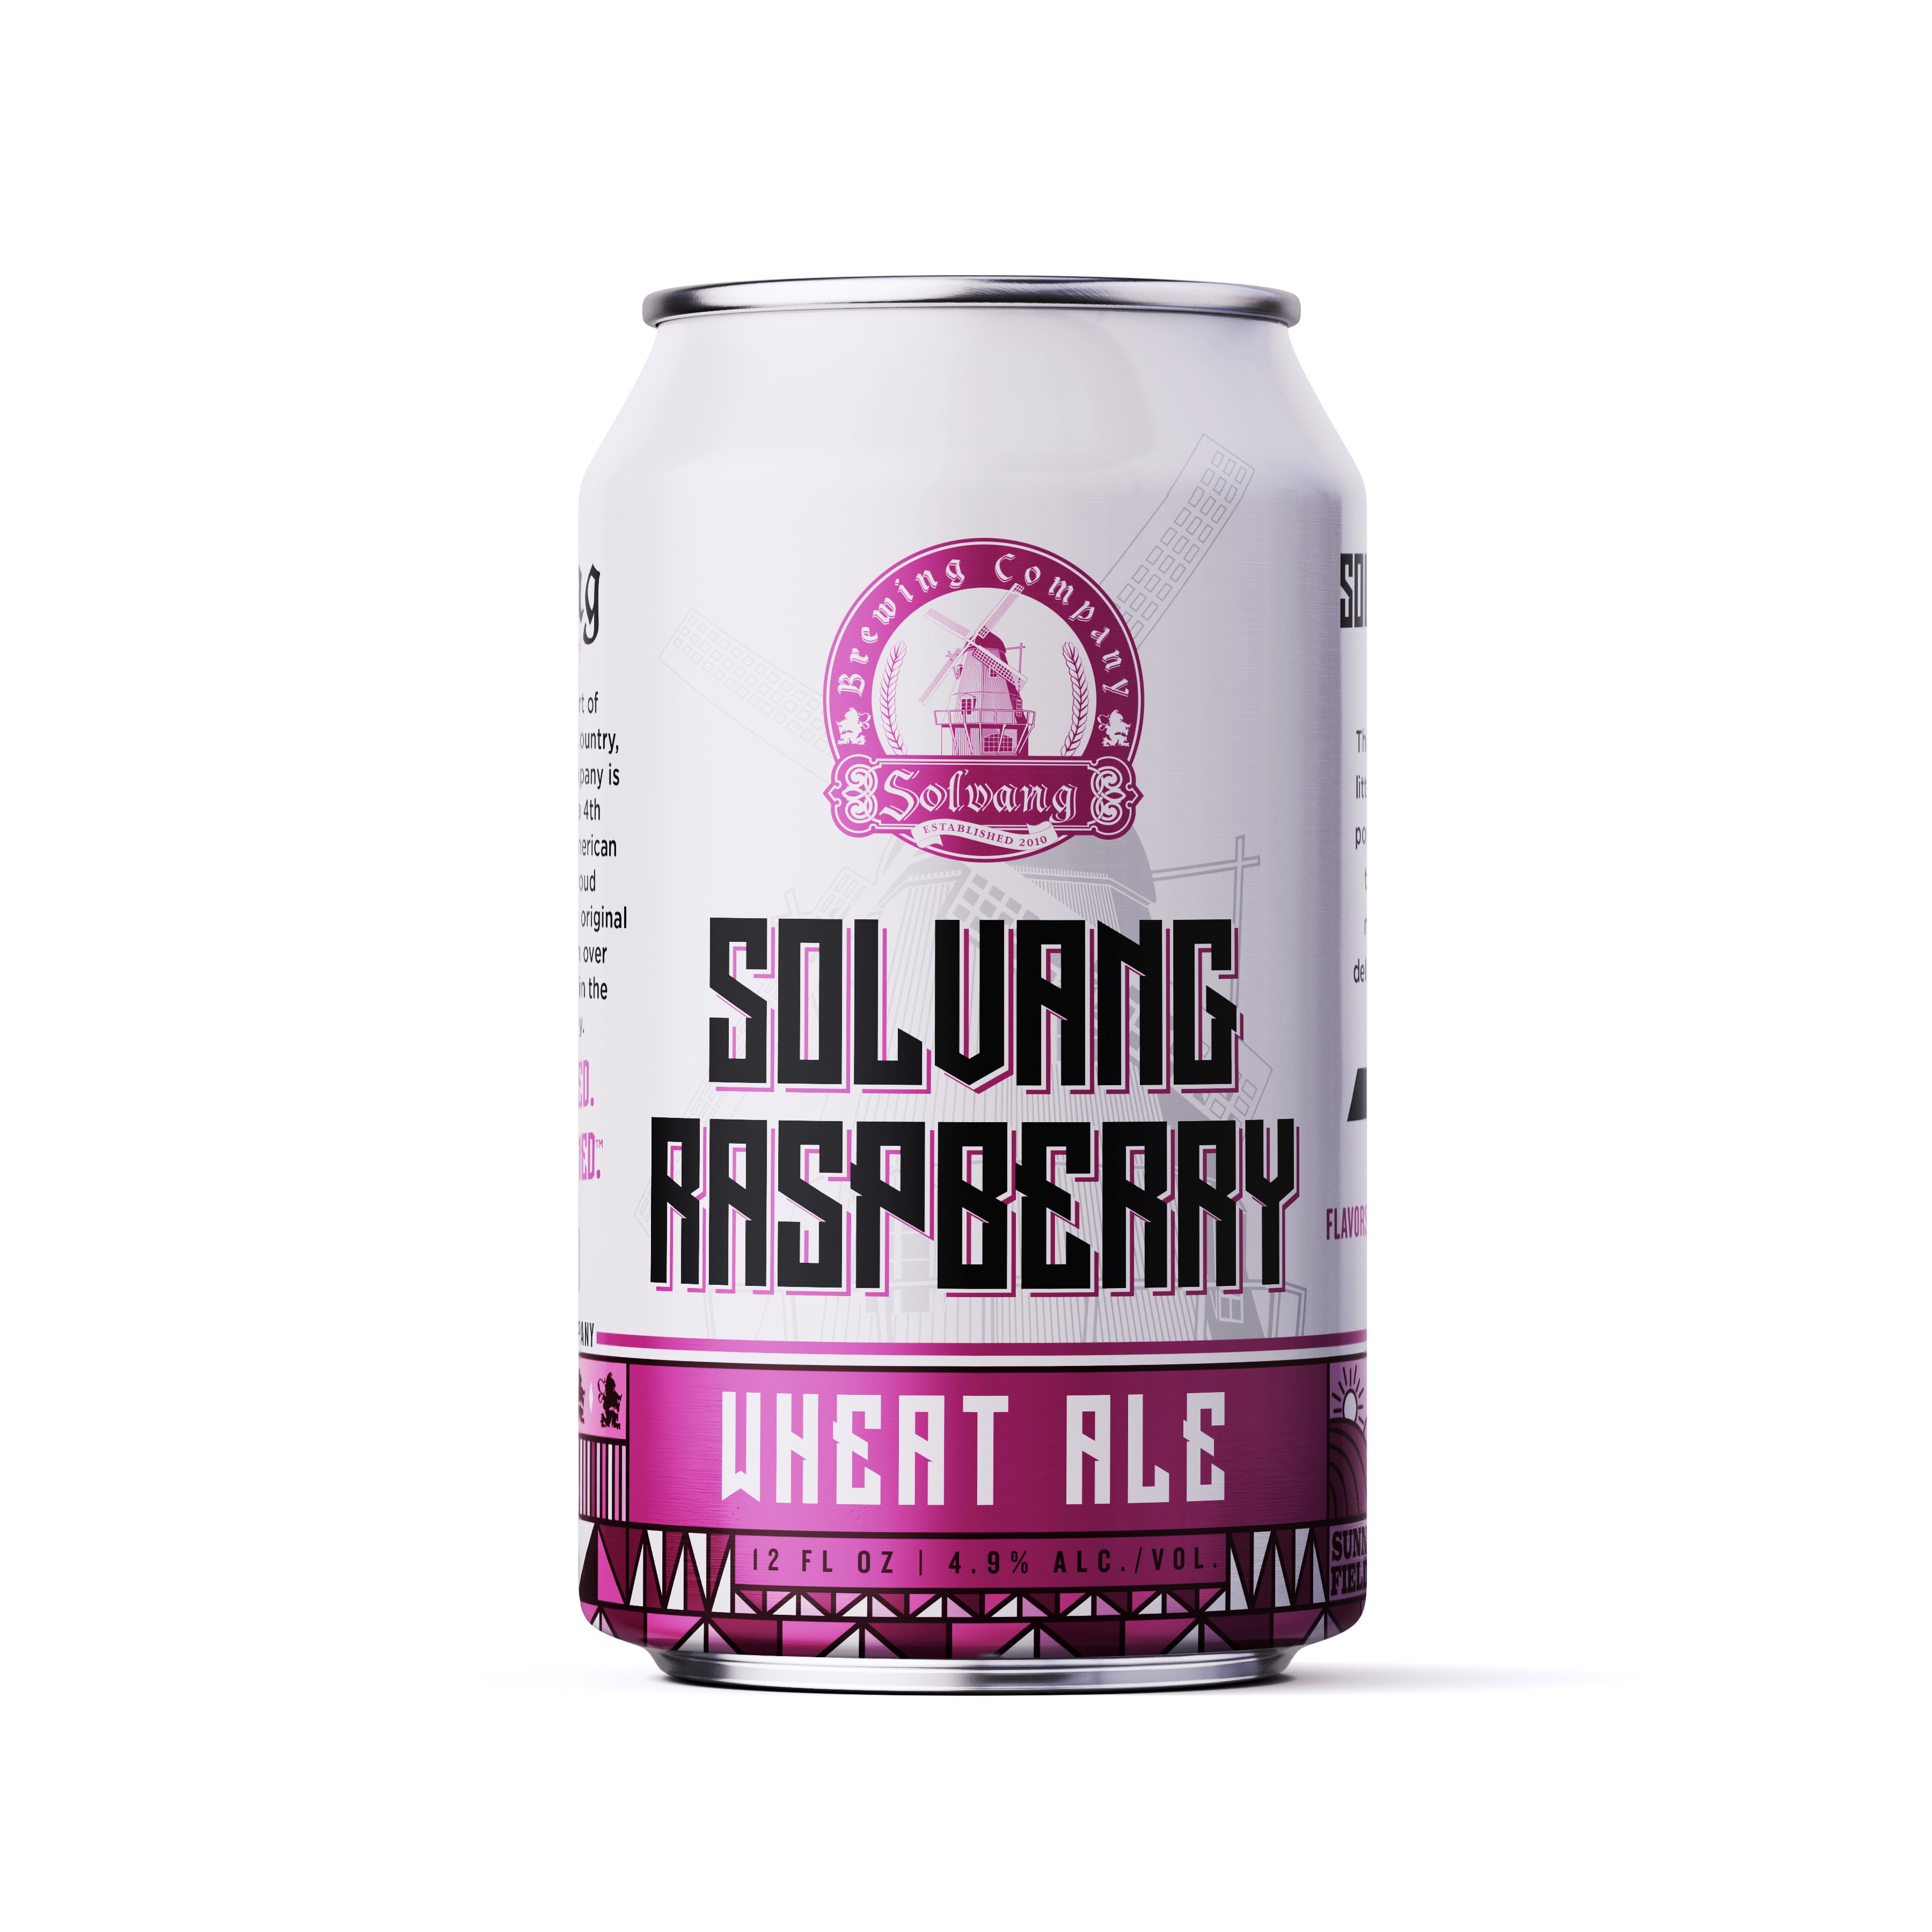 Raspberry Wheat Ale 6 pk Case